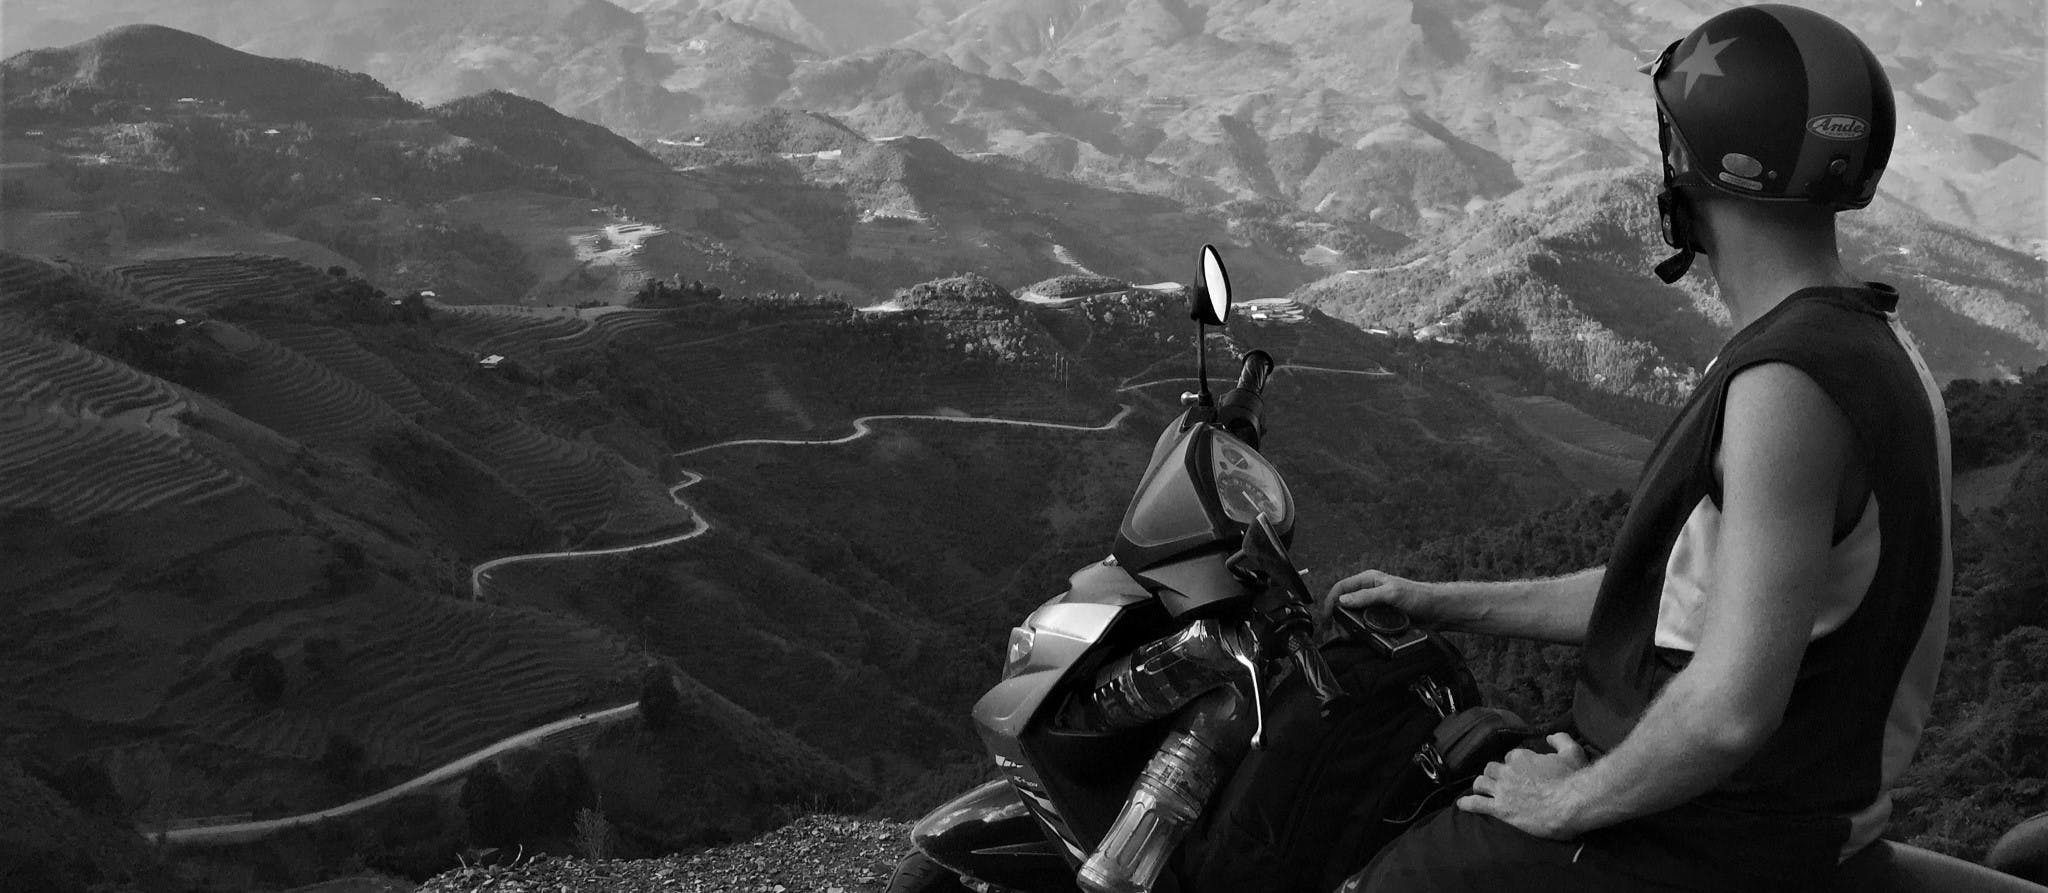 Motorbiking Northern Vietnam